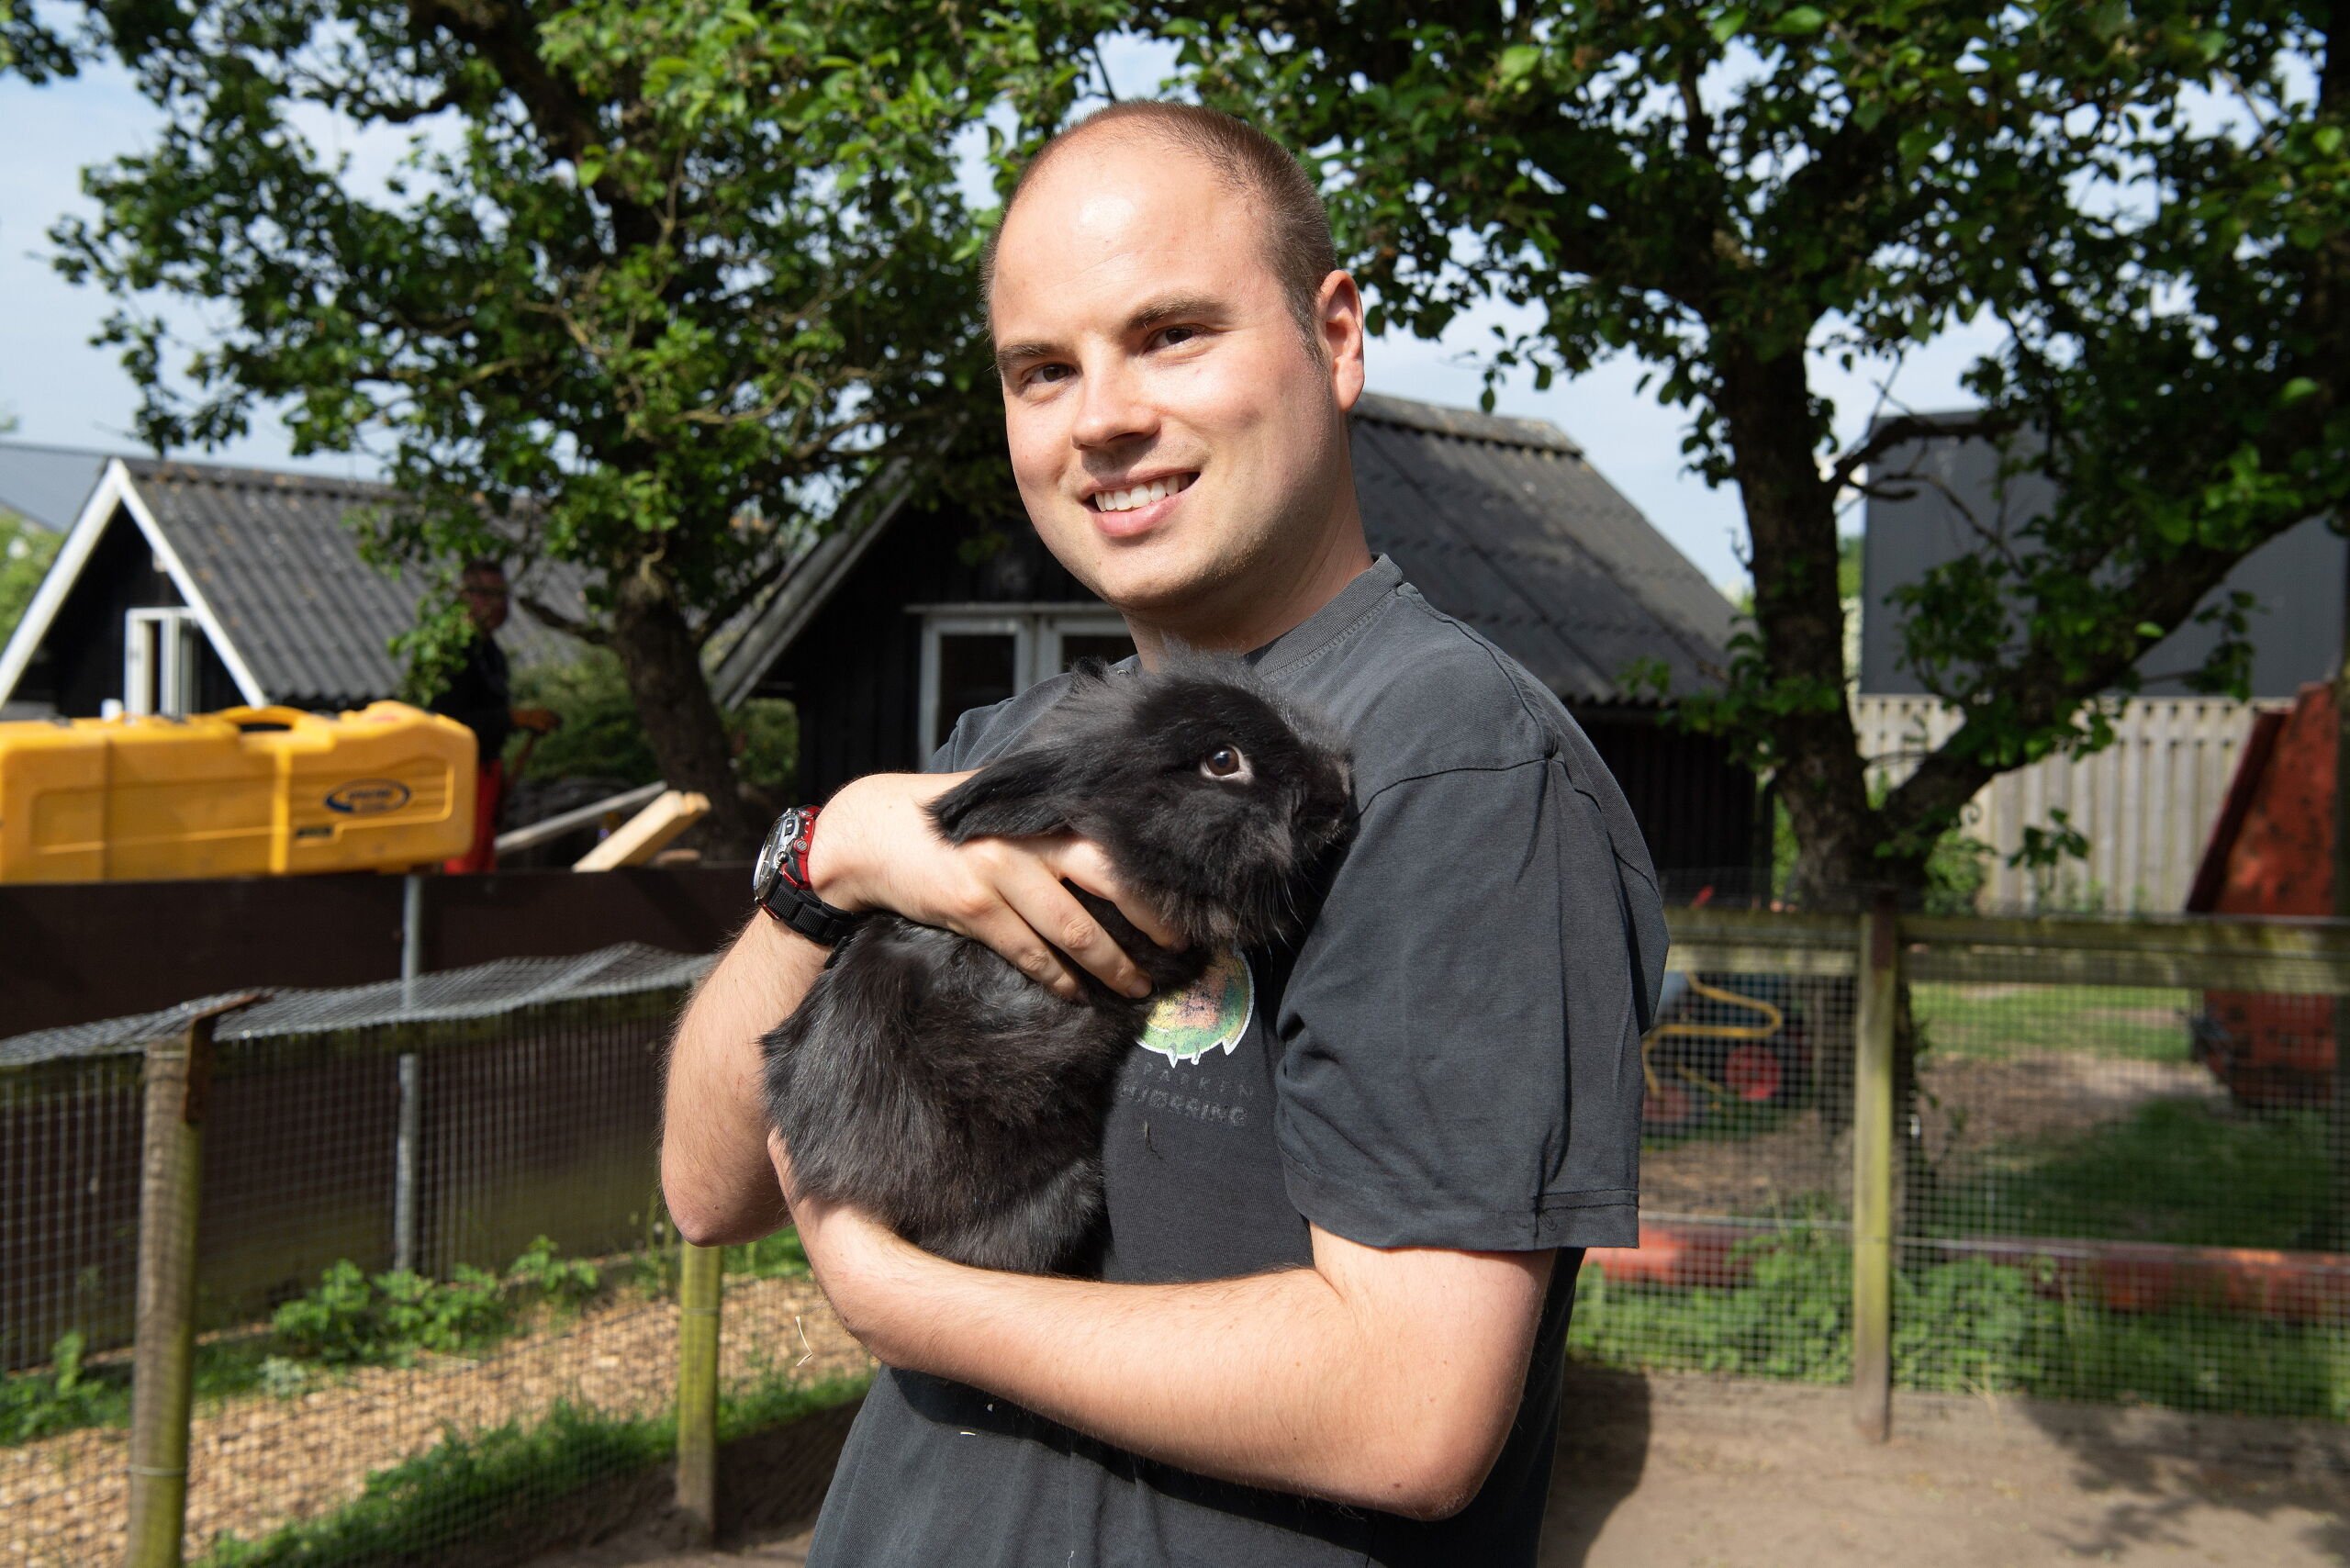 Kaniner blev kvalt og knust dyrepark: - Vi er bange og vrede | Nordjyske.dk